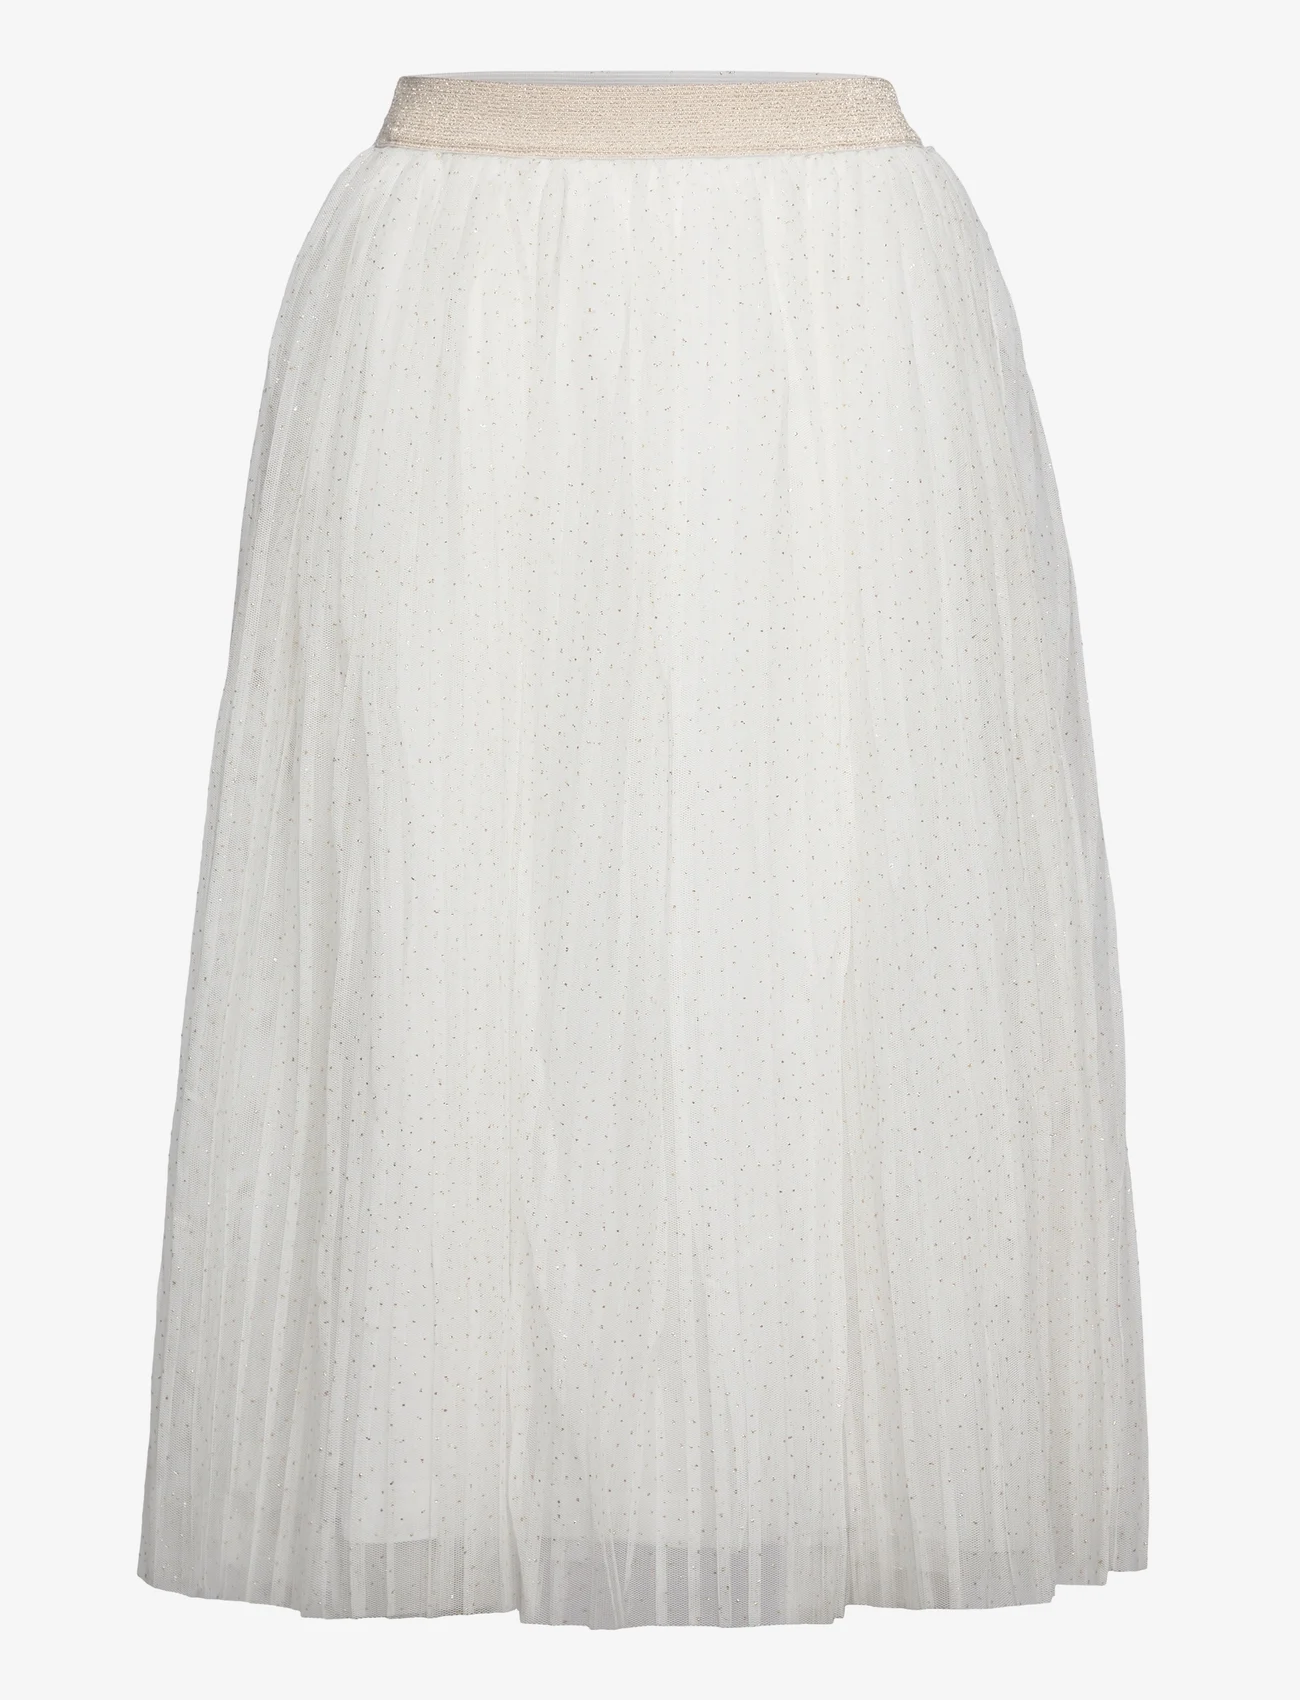 Mango - Glitter tulle skirt - natural white - 0